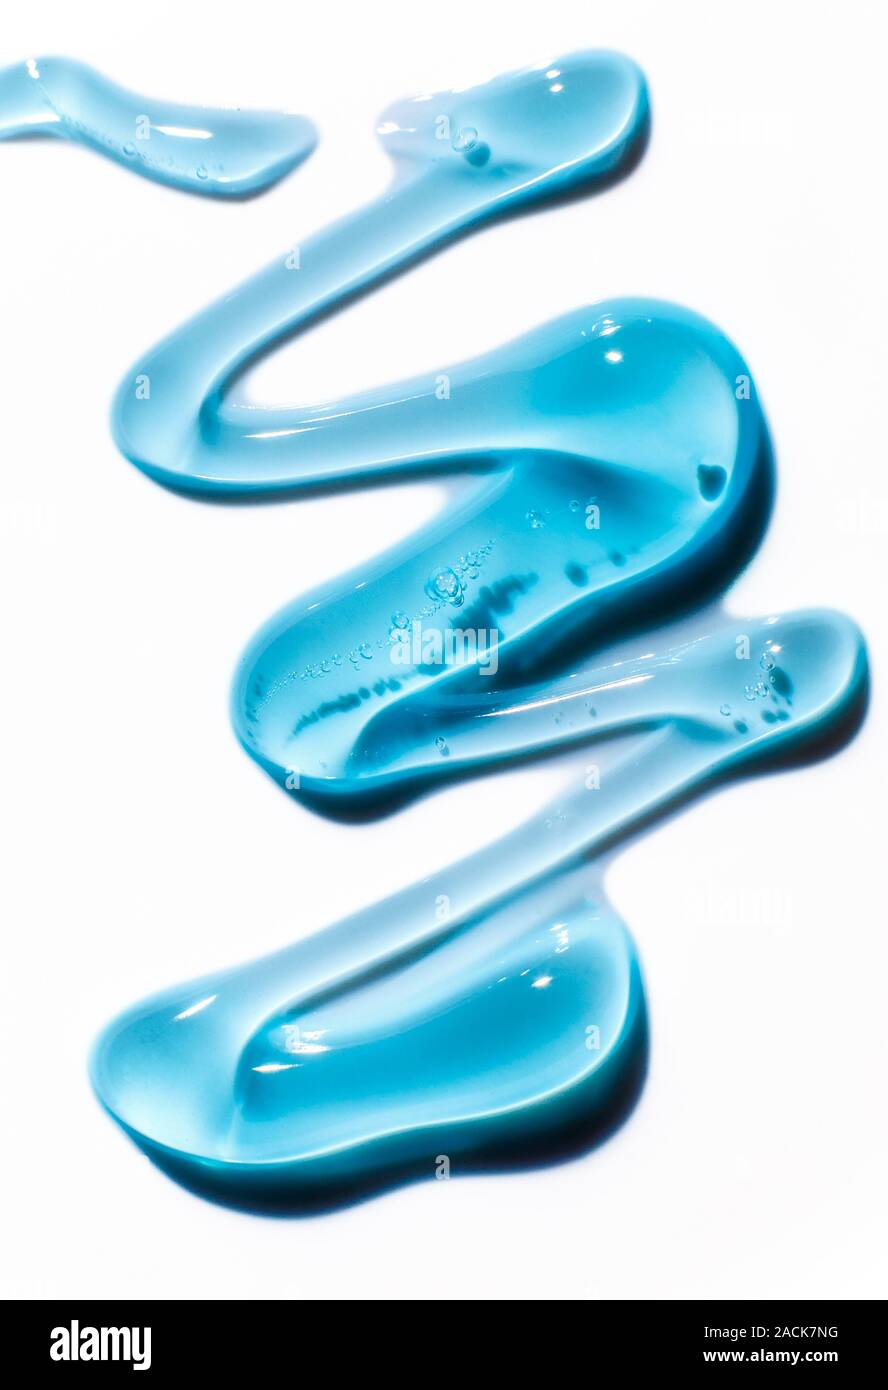 Wasser blau Gel Kugeln. Polymer gel. Silica Gel. Kugeln blau Hydrogel.  Liquid Crystal Ball mit Reflexion. Textur Hintergrund. Nahaufnahme Makro  Stockfotografie - Alamy